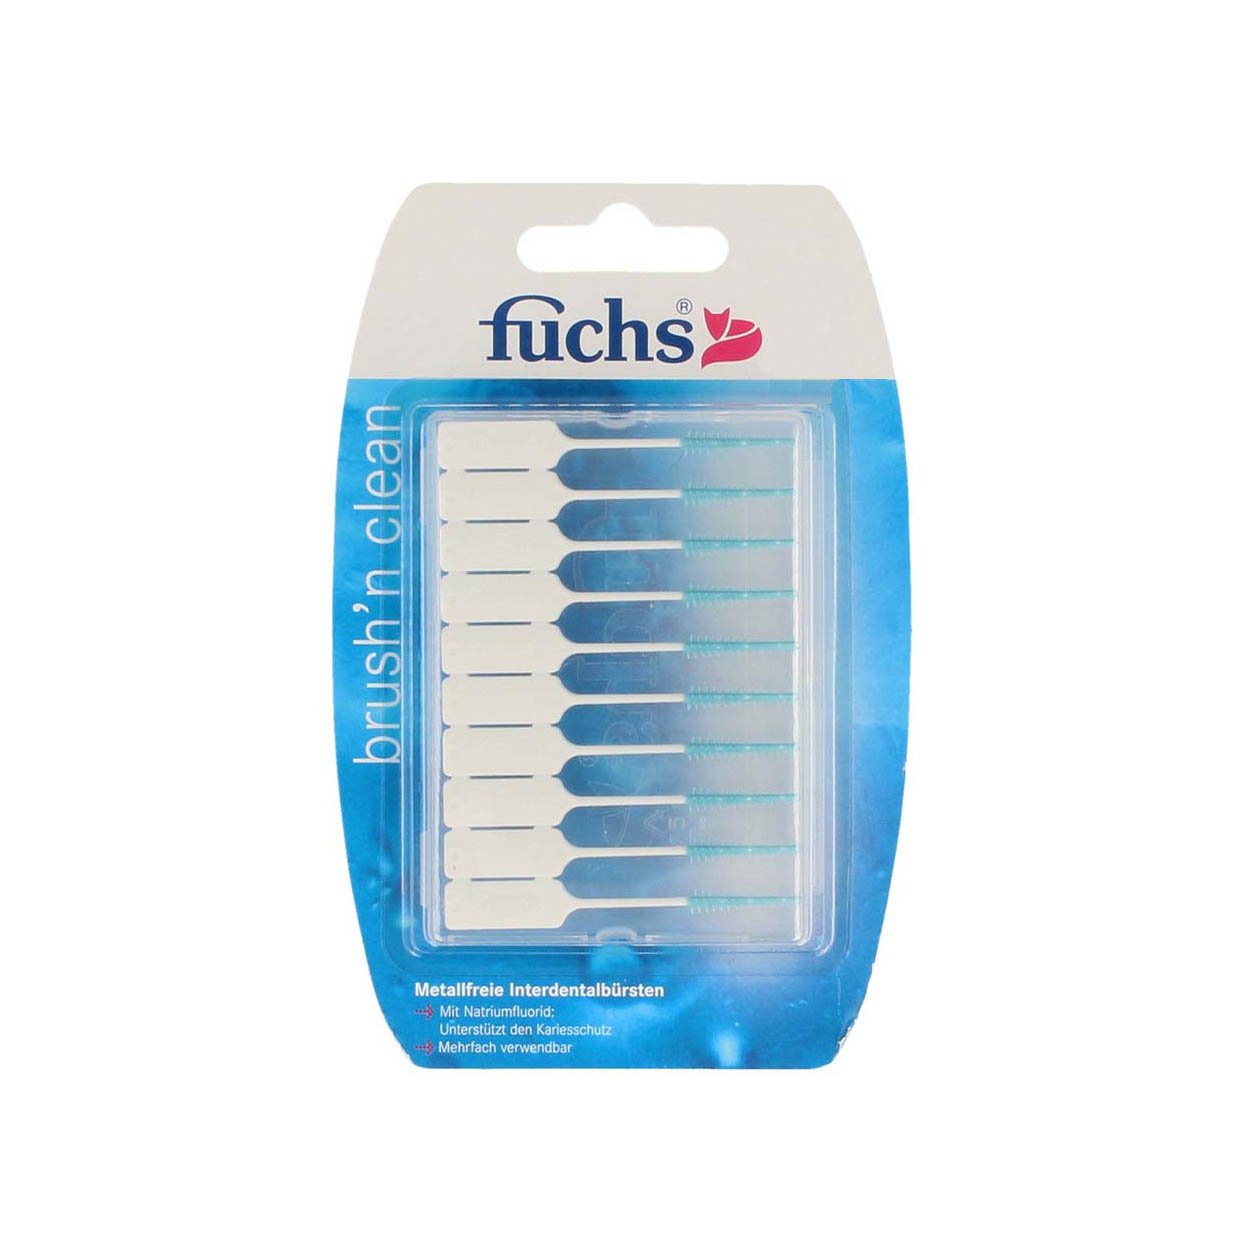 Fuchs Brush n Clean Interdentalbürsten 20 Stück, 10er Pack (10 x 20 Stück) | metallfrei | mit Fluorid